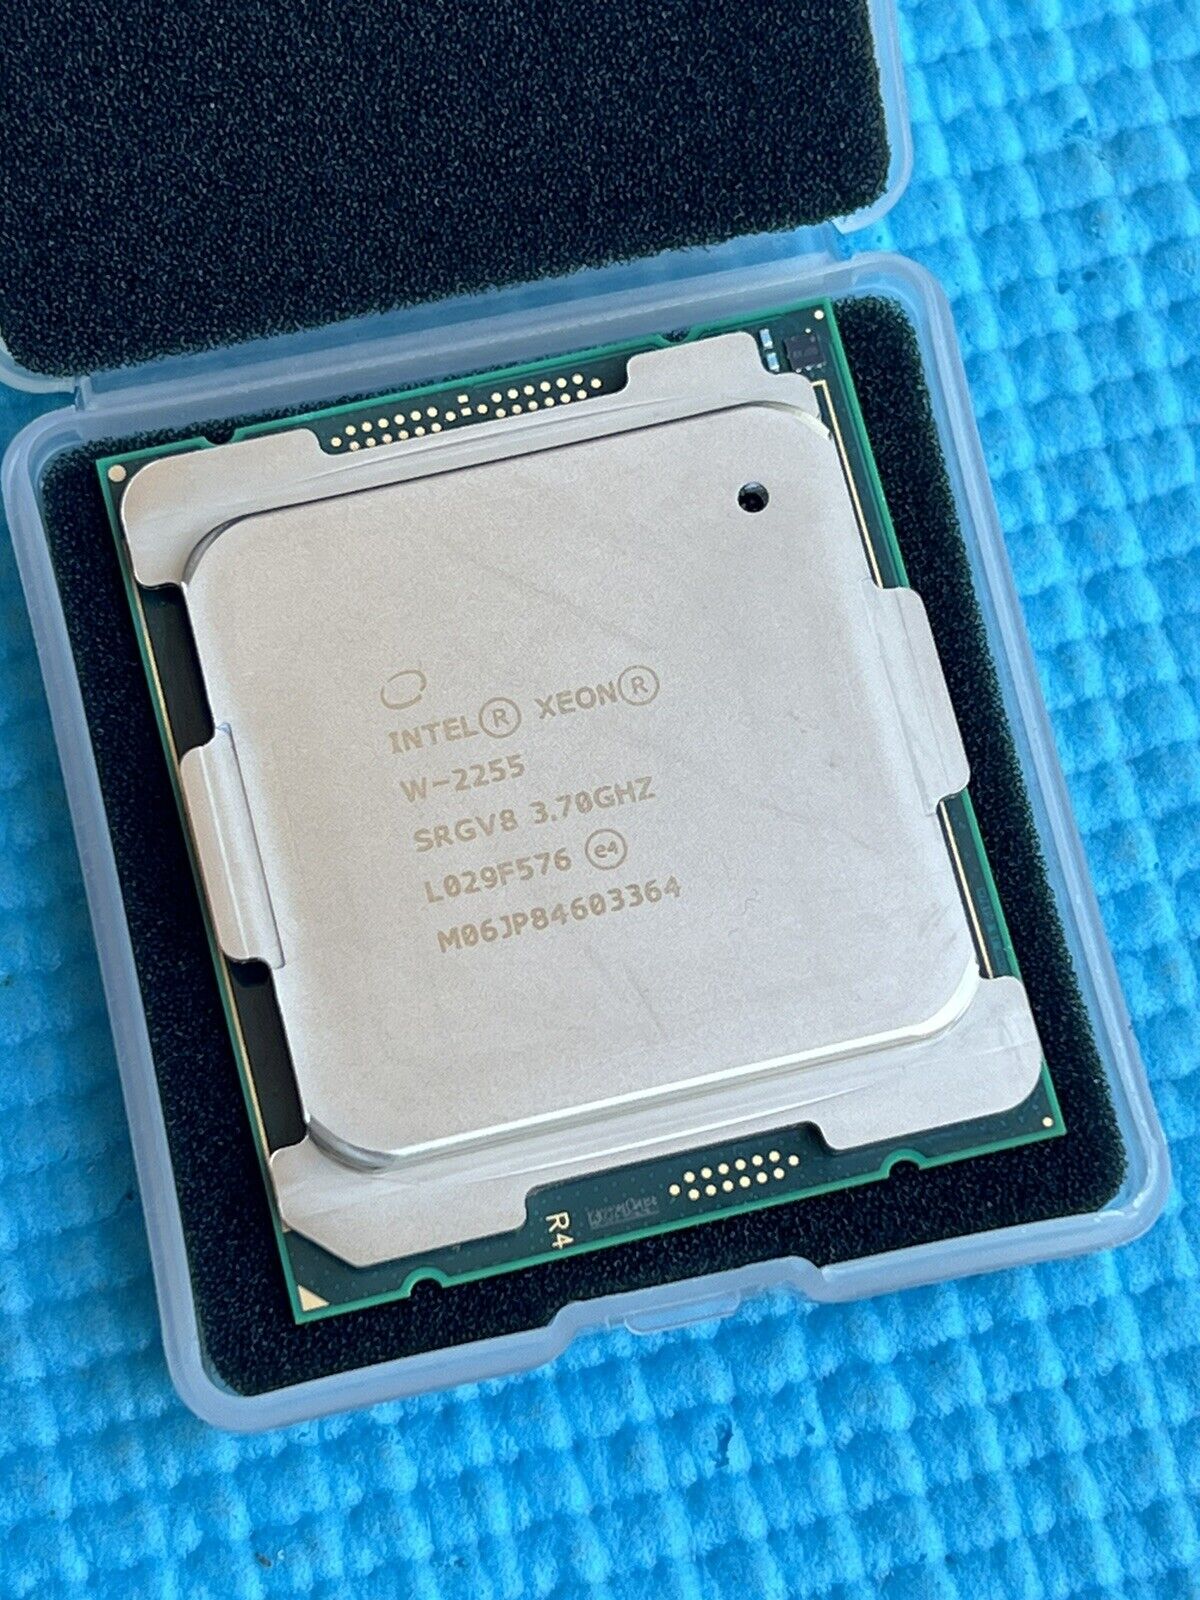 Intel Xeon W-2255 3.7GHz 10 Core (SRGV8) Processor 165W -SN:M06JР84603364